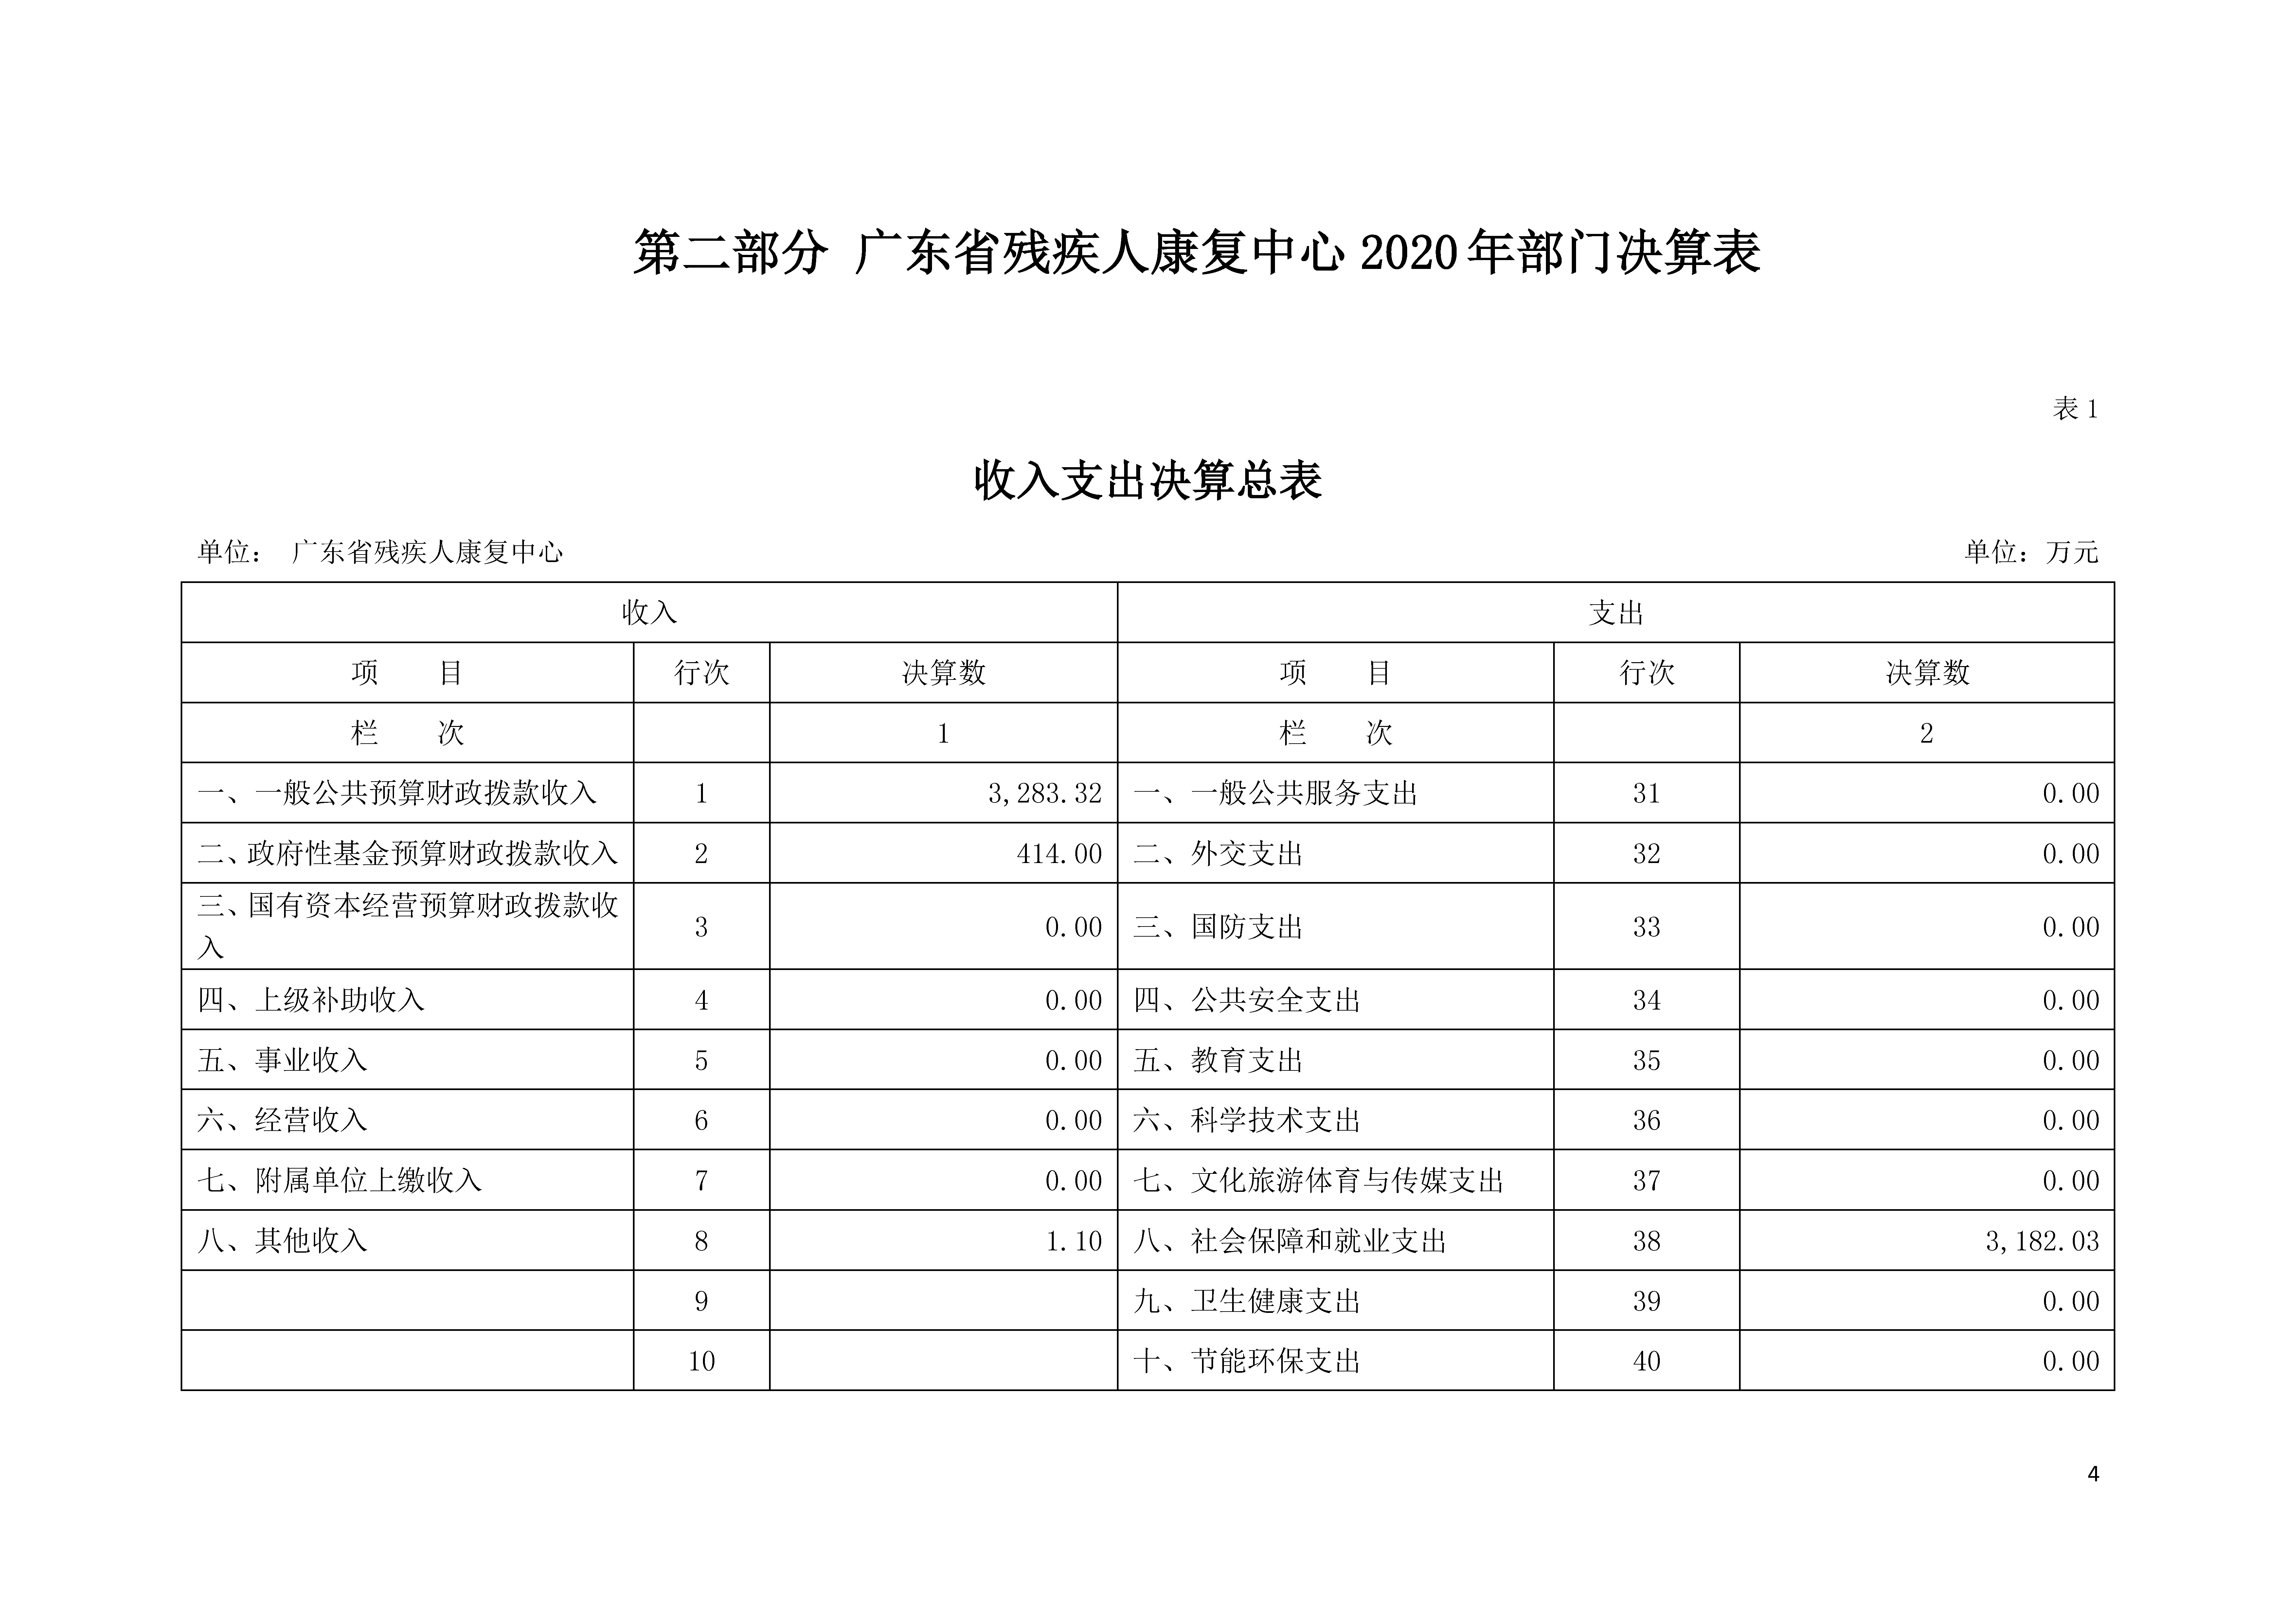 2020年广东省残疾人康复中心部门决算_页面_04.jpg